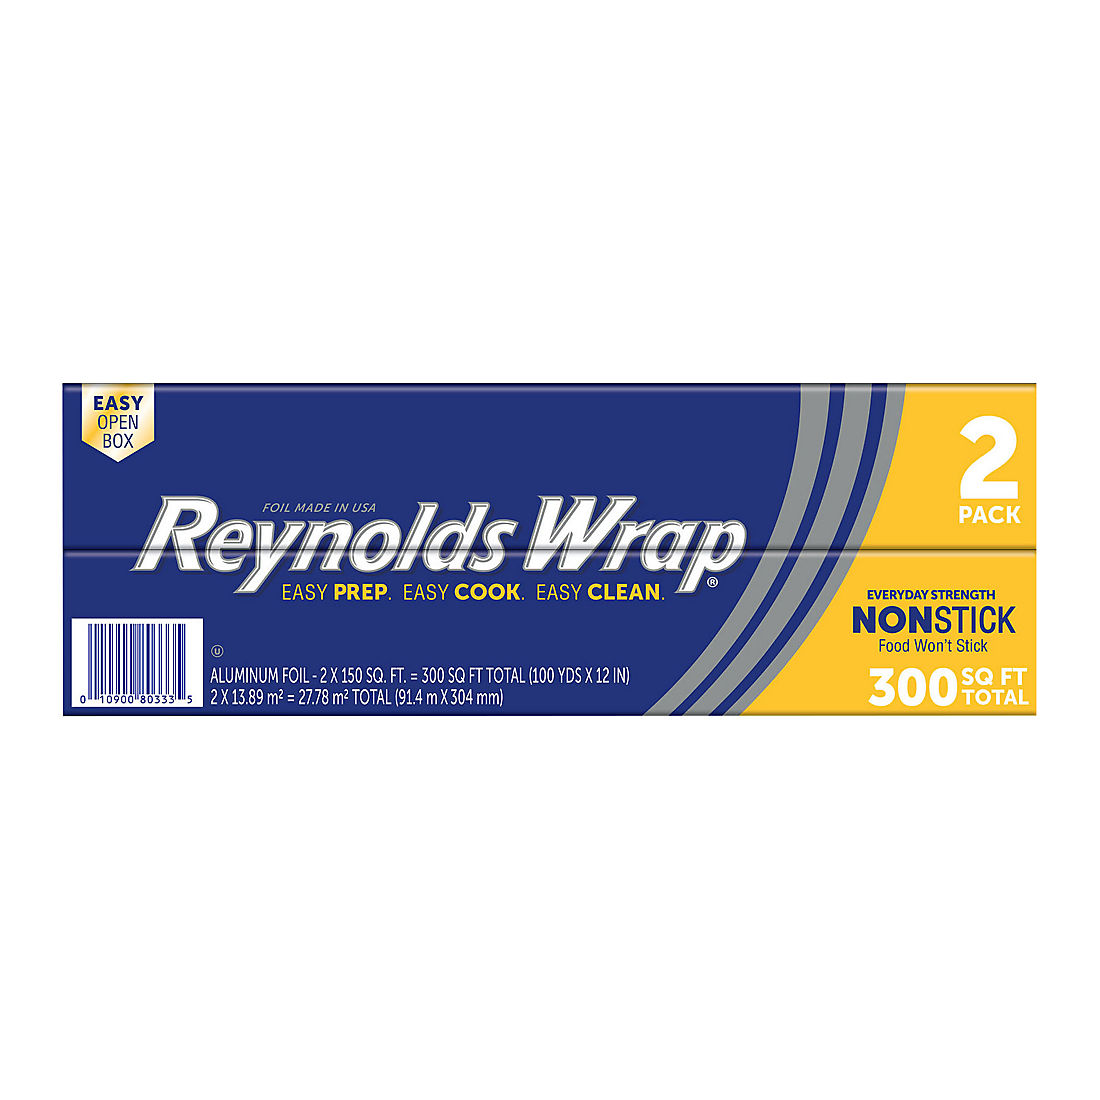 Reynolds Wrap Non Stick Foil, 2 ct.